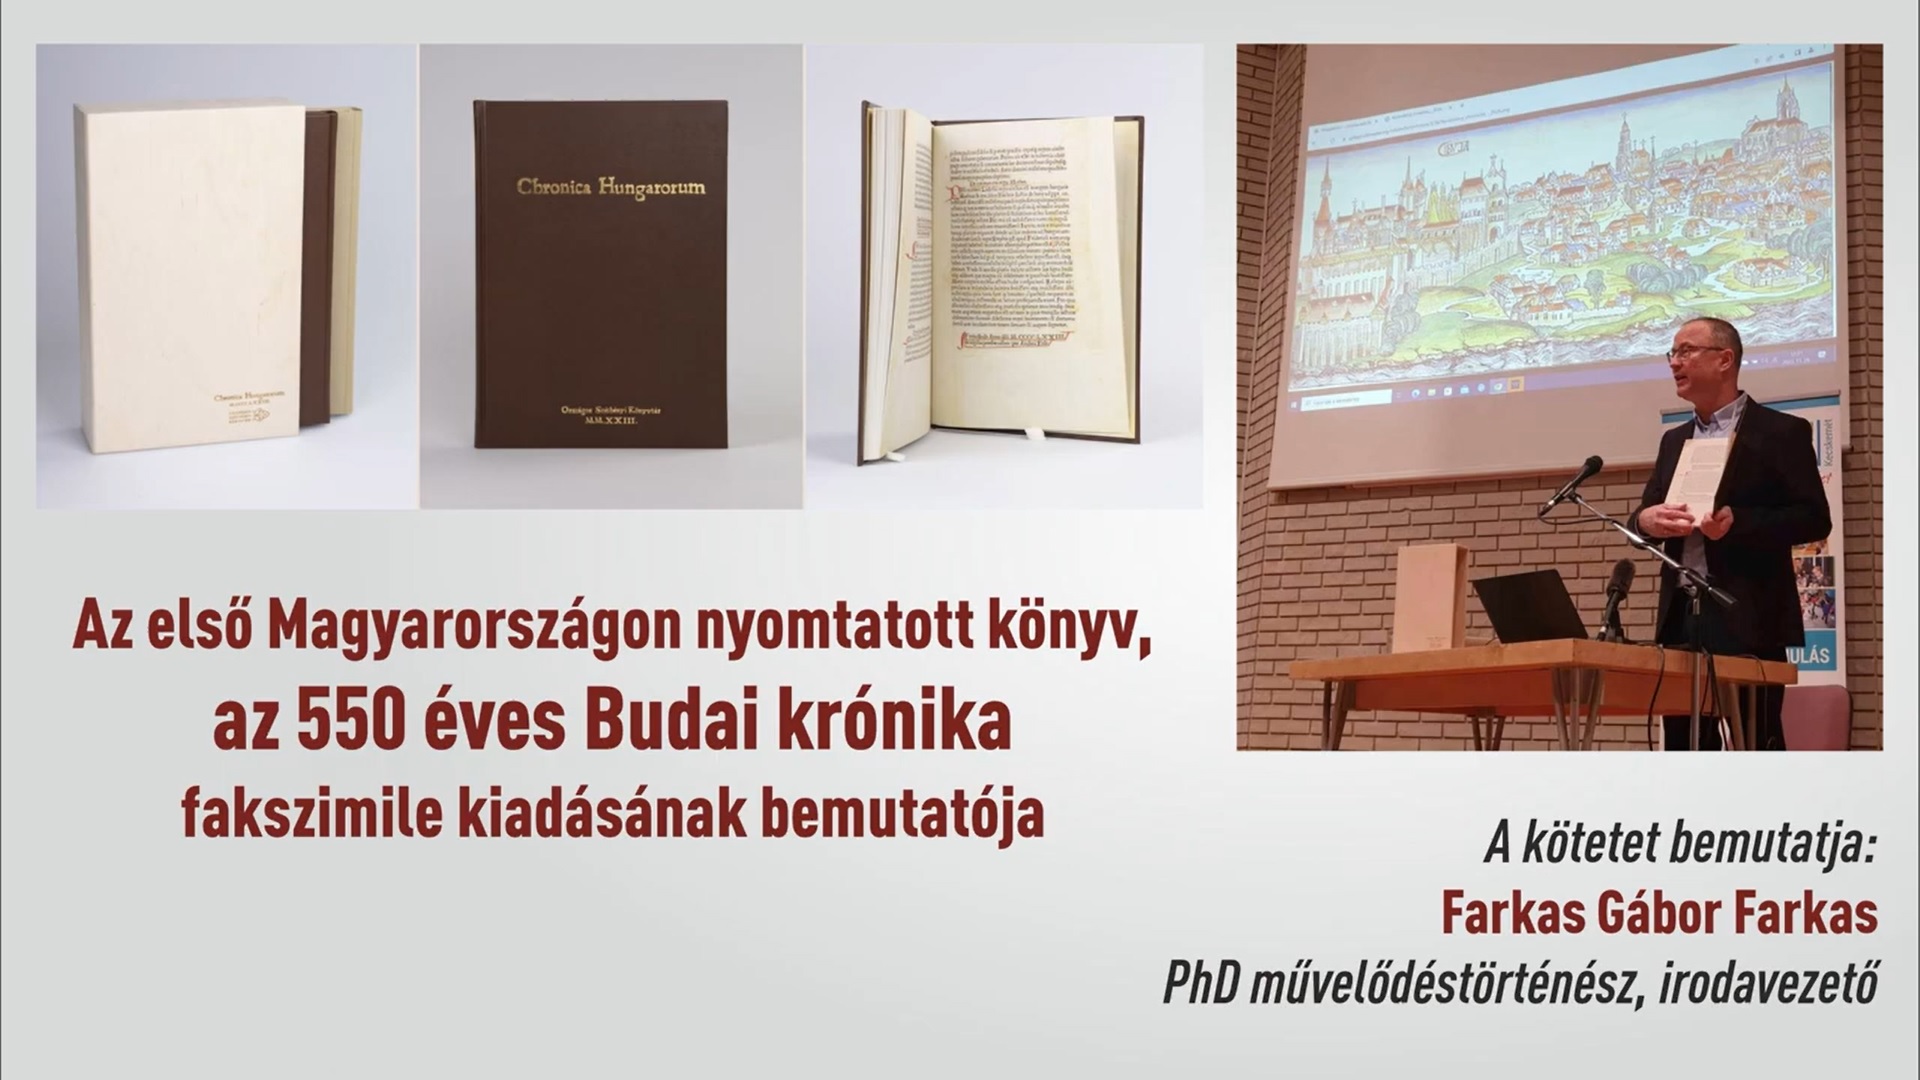 Az első Magyarországon nyomtatott könyv, az 550 éves Budai krónika fakszimile kiadásának bemutatója